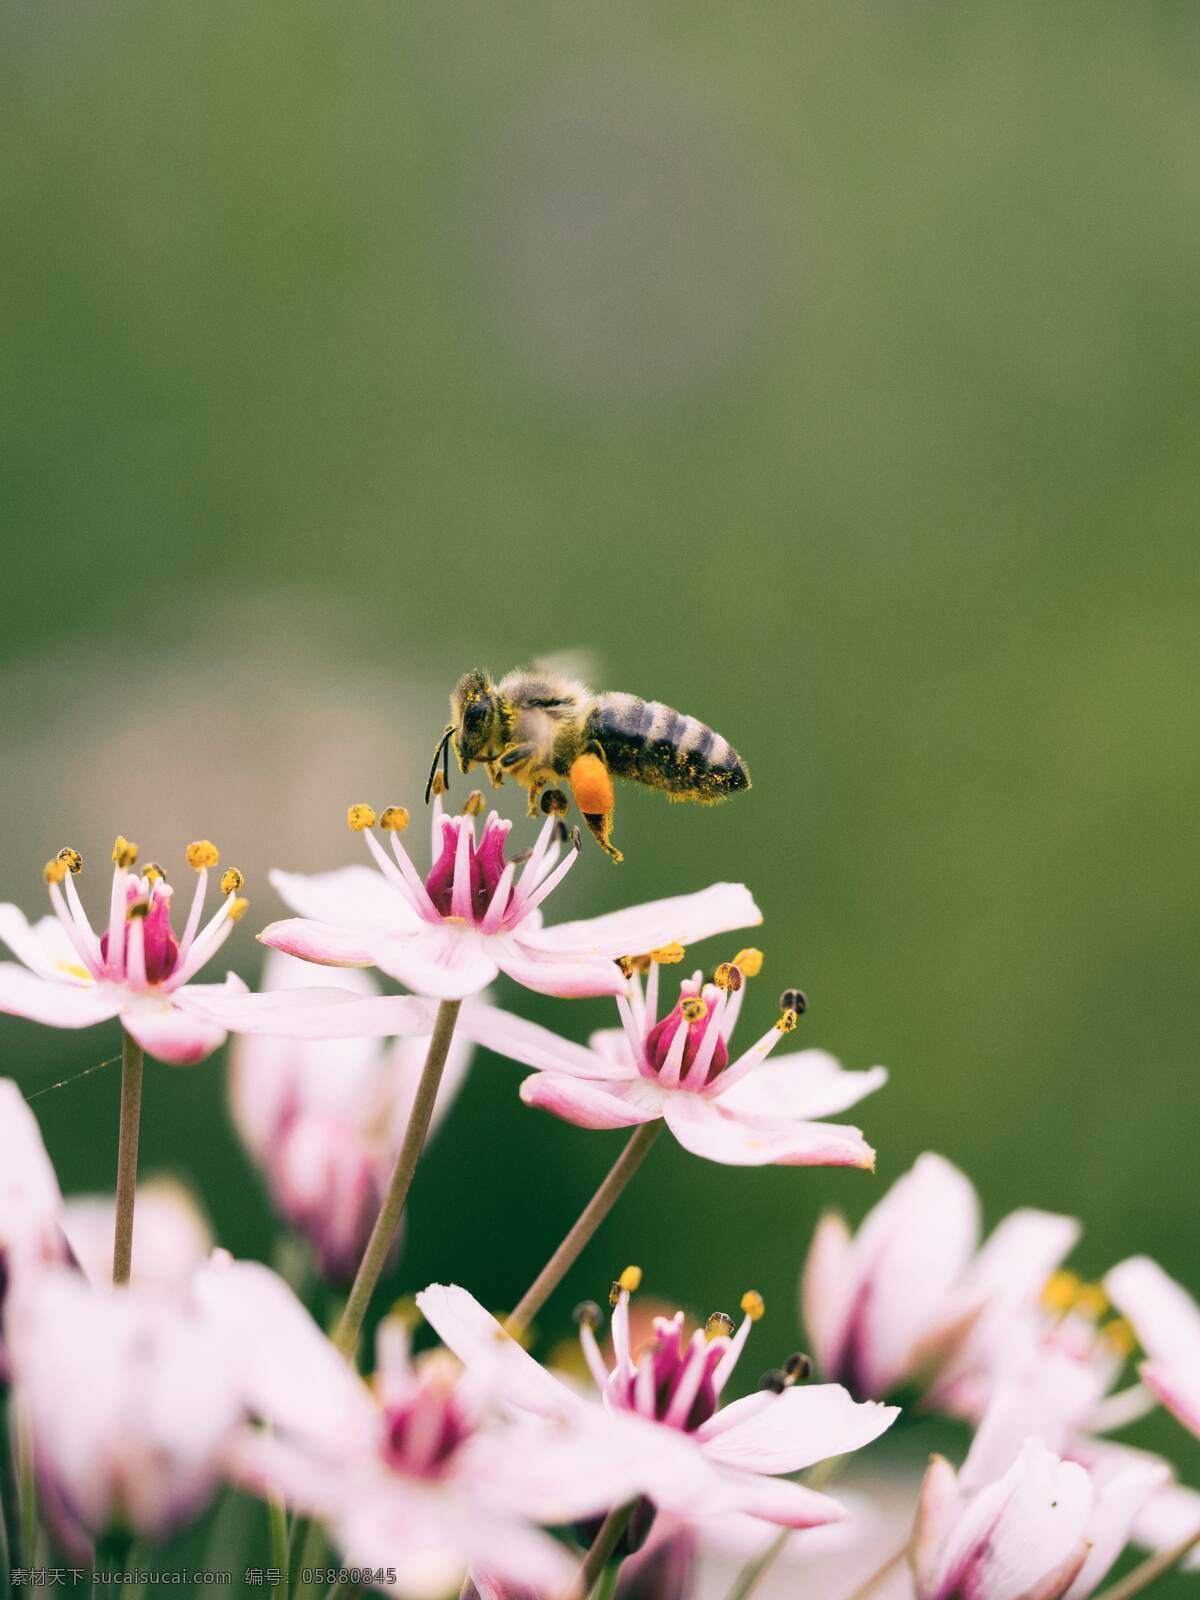 蜜蜂图片 蜜蜂 小蜜蜂 大蜜蜂 大黄蜂 飞舞 采蜜 花朵 花期 花瓣 动物 生物世界 昆虫